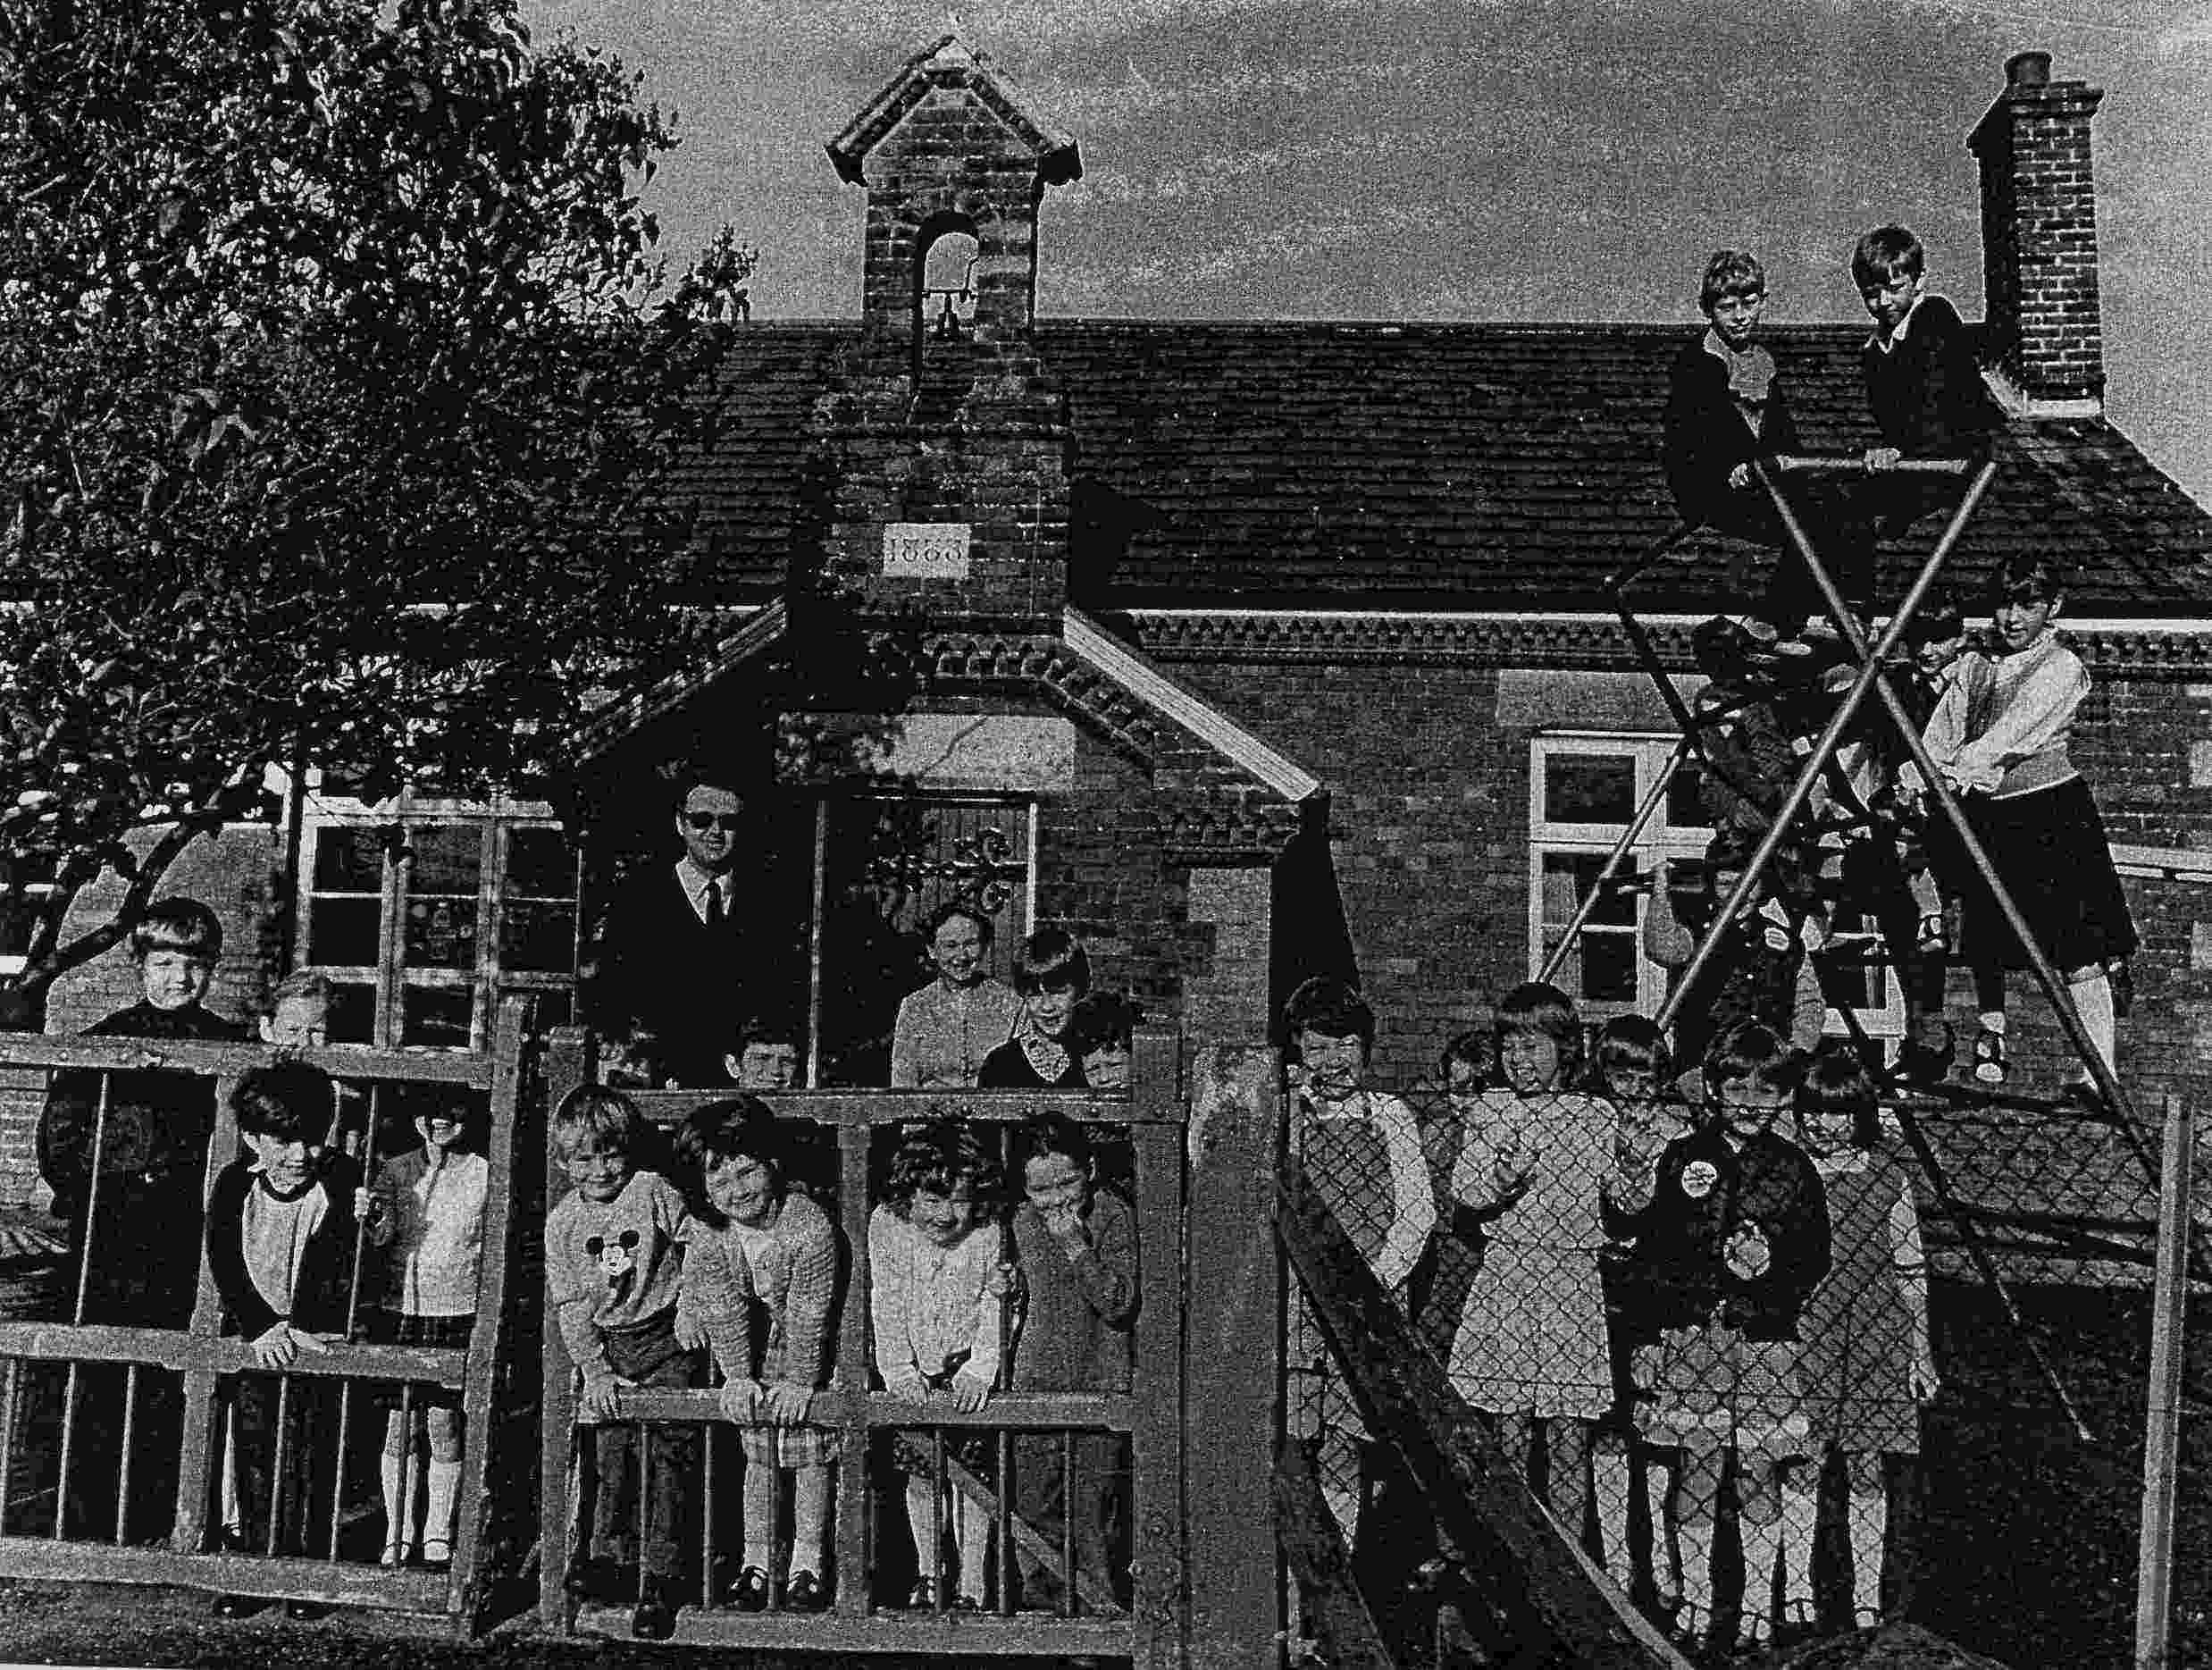 The School 1984